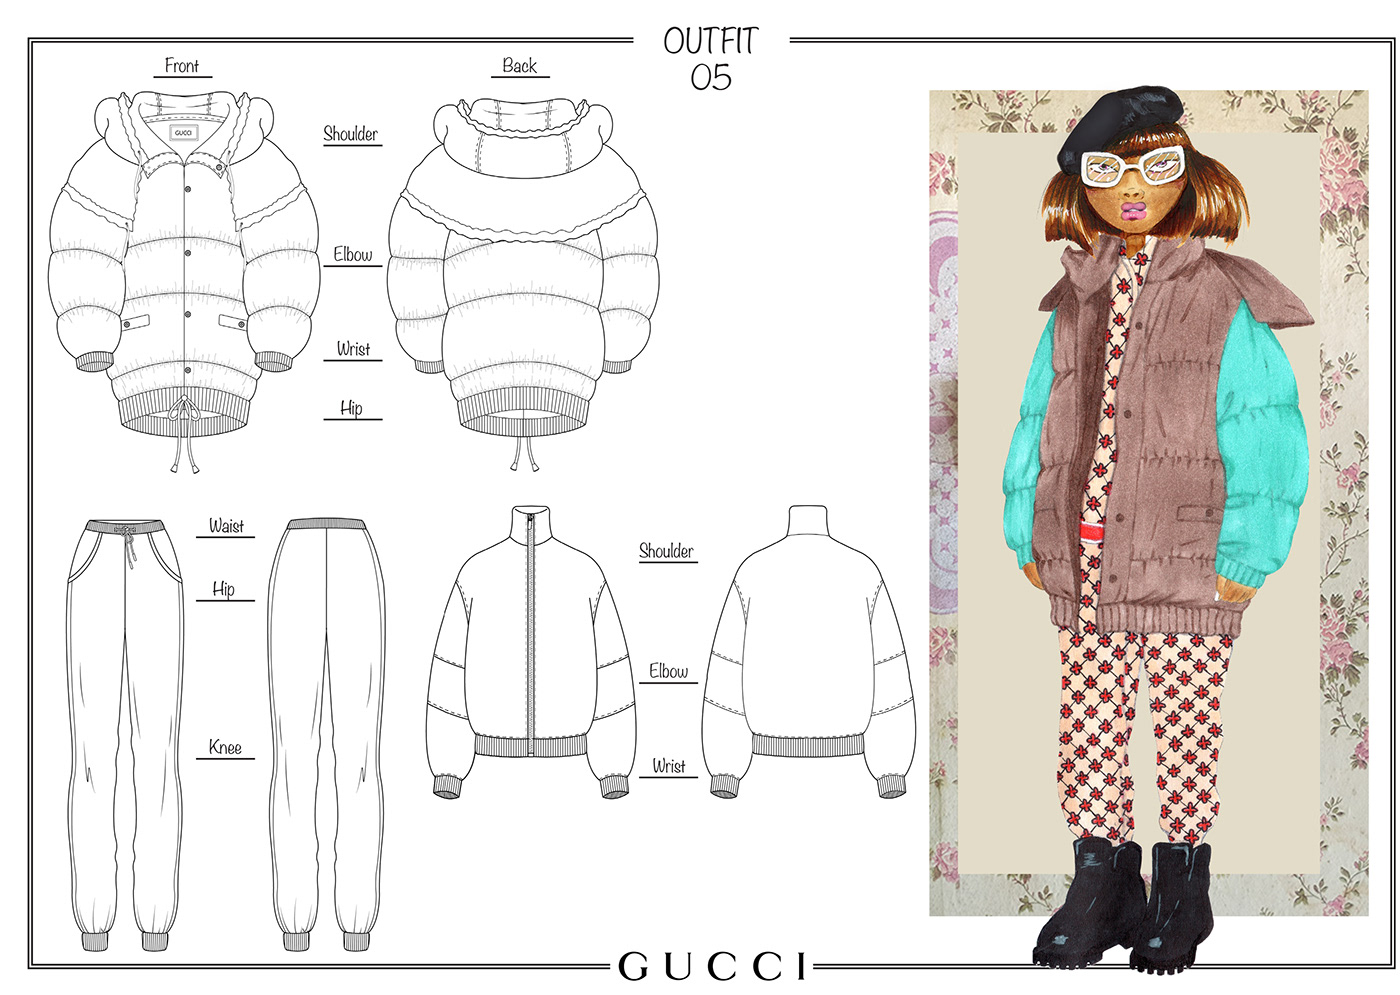 fashion design gucci illustrations Menswear moodboard portfolio research technical drawing